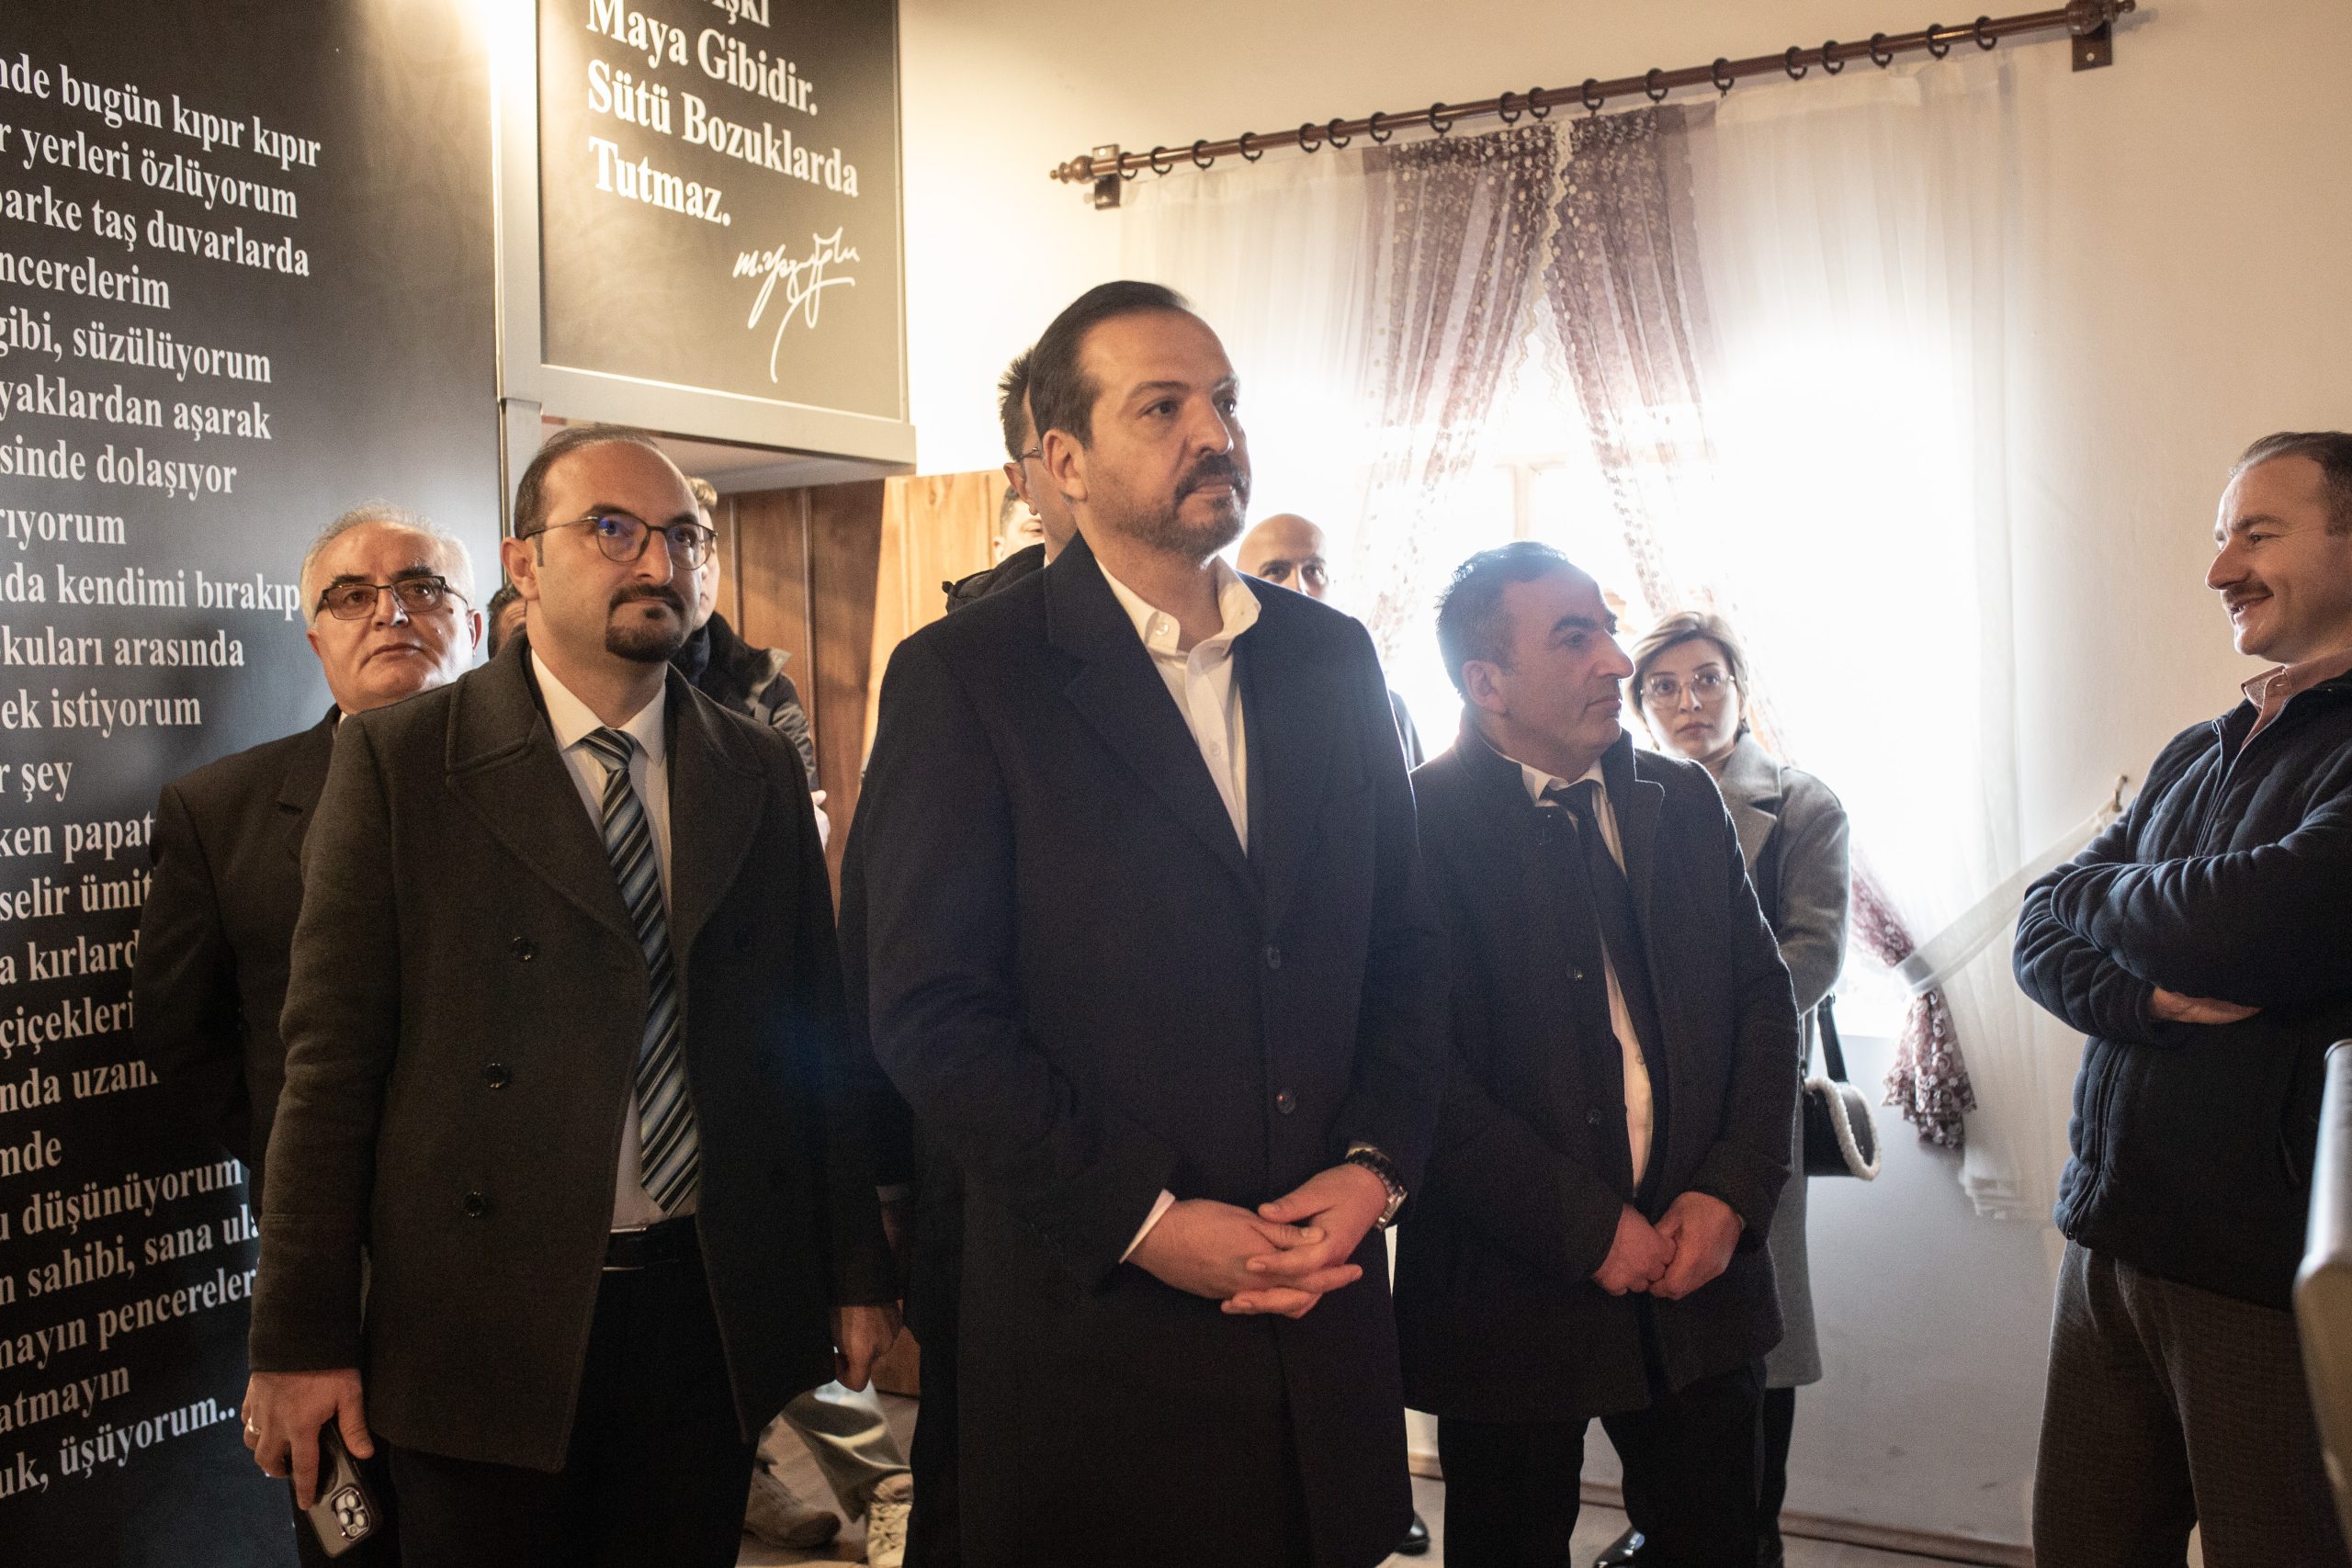 İyi Parti Genel Başkan Yardımcısı ve parti sözcüsü Ankara Milletvekili Kürşat Zorlu Muhsin Yazıcıoğlu Anı Evini ziyaret etti